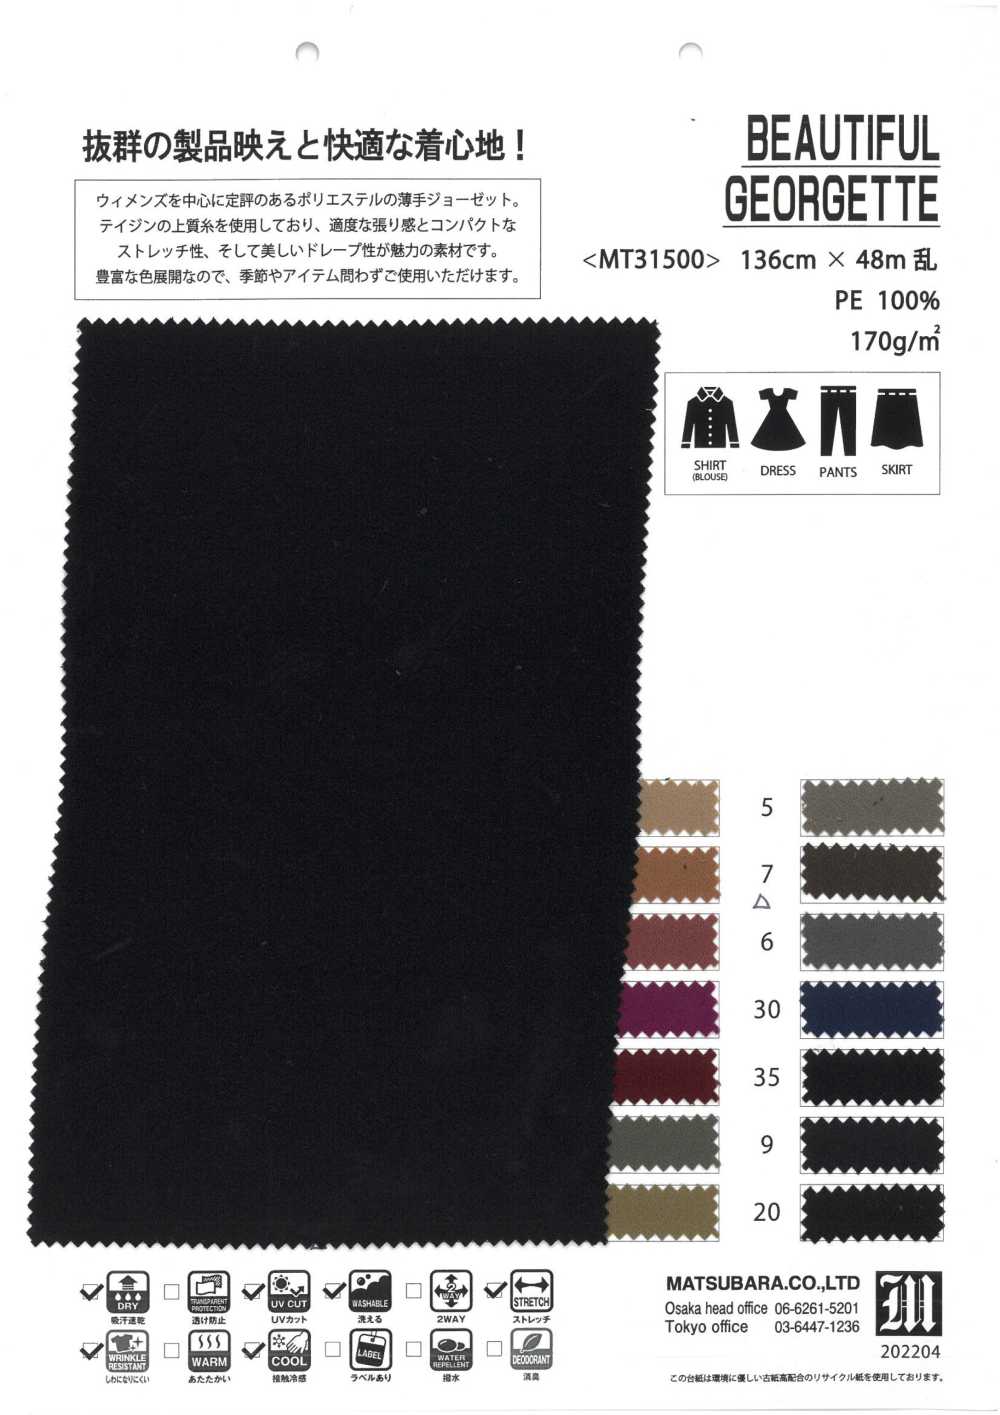 MT31500 BELLE GÉOGETTE[Fabrication De Textile] Matsubara